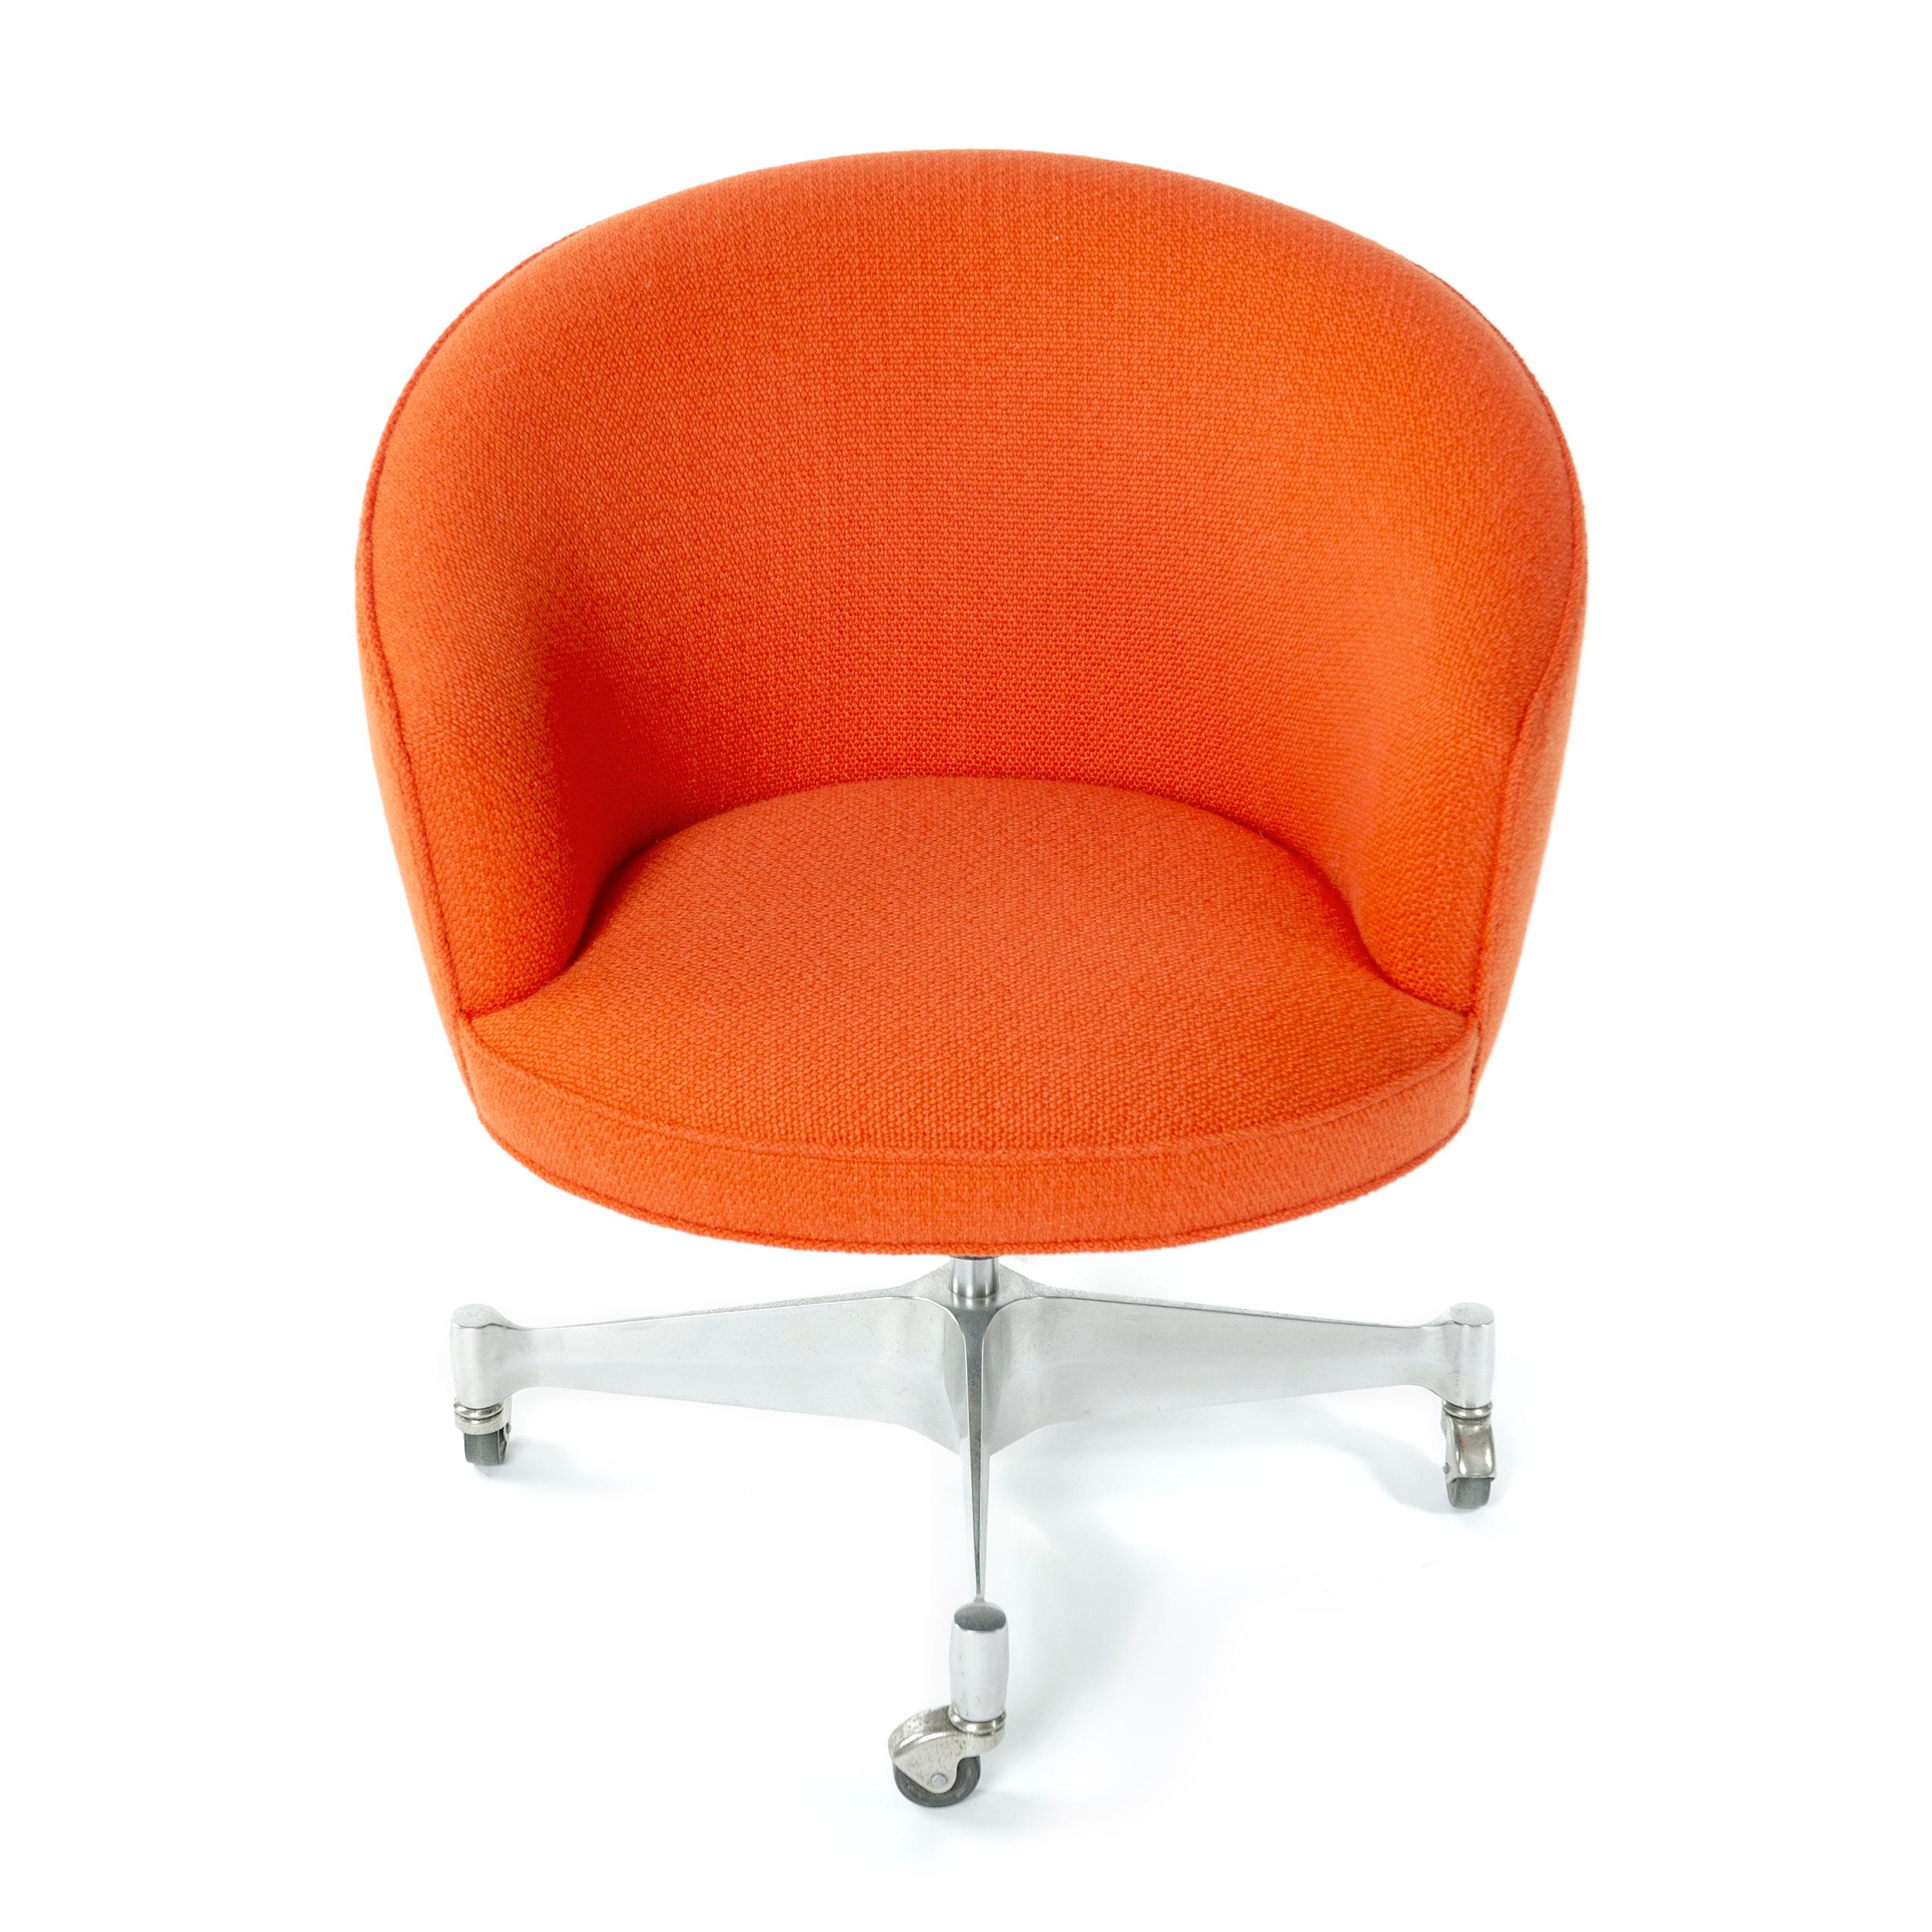 Une chaise de bureau à roulettes conçue par George Nelson, en tissu orange, soutenue par une base pivotante à roulettes. Fabriqué par George Nelson et Associés dans les années 1960. Nouvellement retapissé.